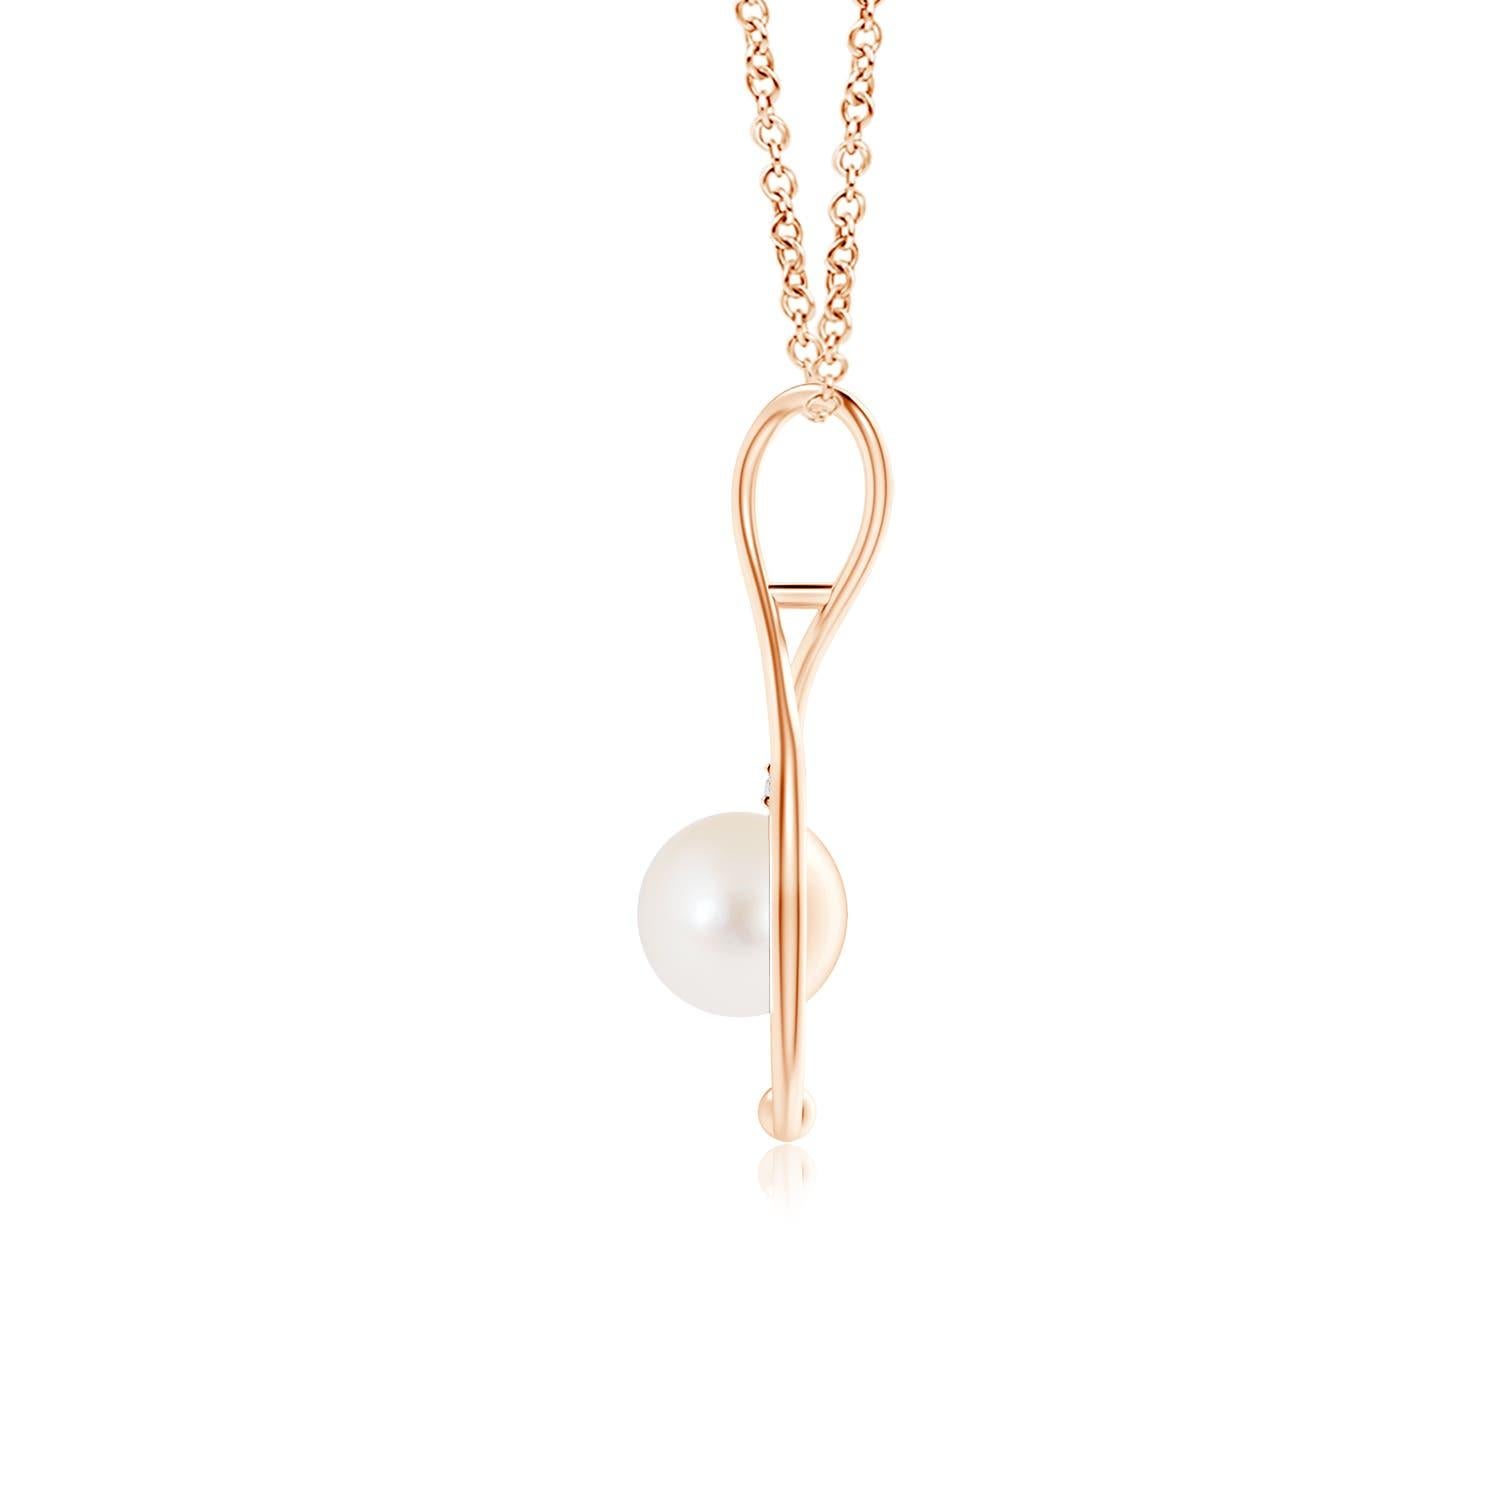 Diese Perlenkette aus 14 Karat Roségold ist ein moderner Klassiker und eine wunderschöne Interpretation des beliebten Unendlichkeitssymbols. Die Endlosschleife schmiegt sich sanft an die runde Süßwasser-Zuchtperle und vermittelt ein Gefühl von